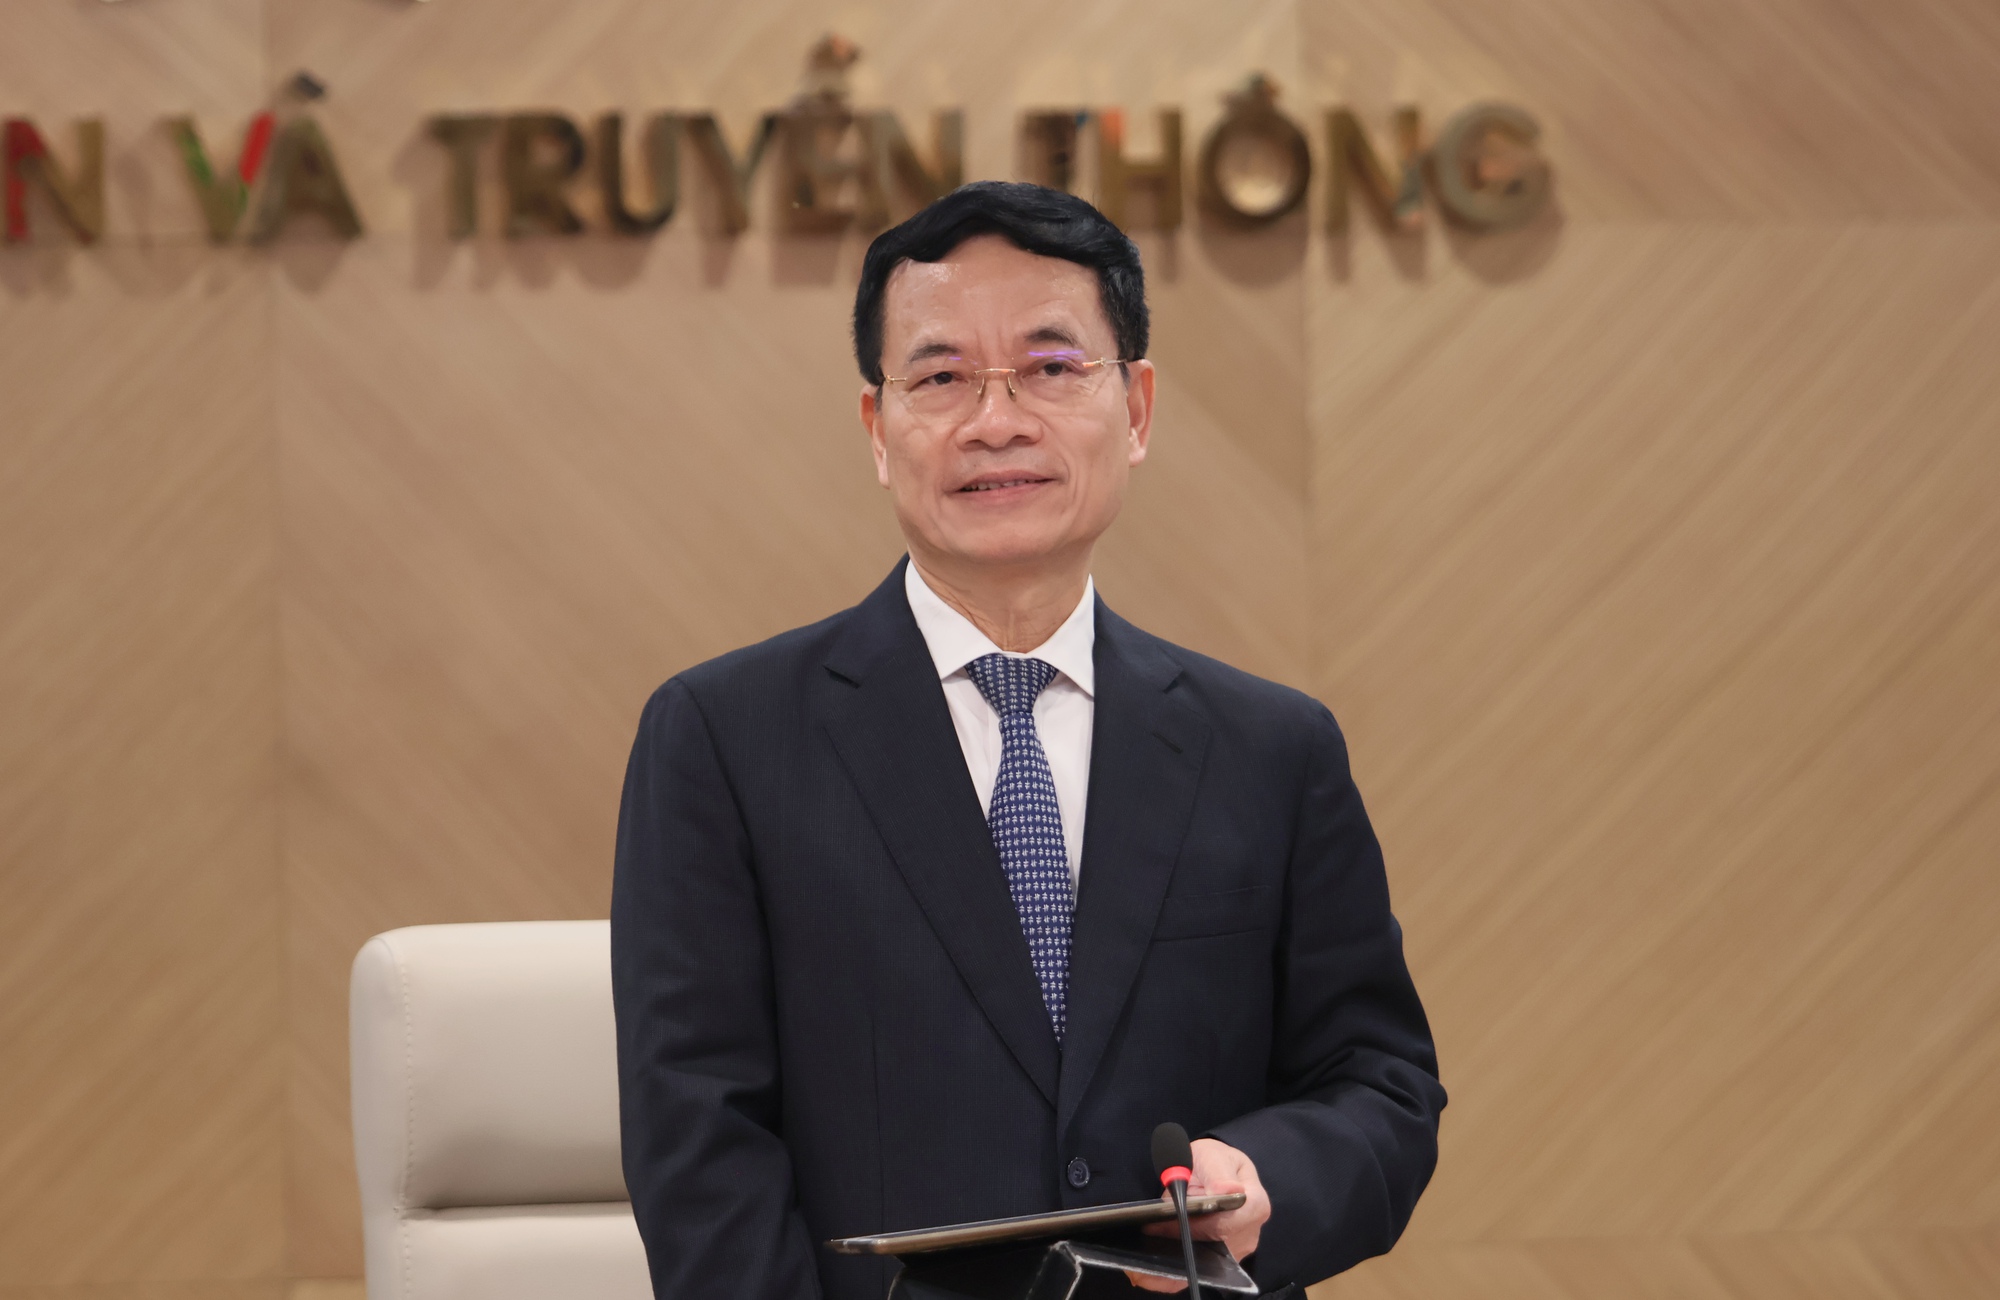 Phát biểu của Bộ trưởng Nguyễn Mạnh Hùng tại Lễ công bố quyết định bổ nhiệm Thứ trưởng Bùi Hoàng Phương- Ảnh 1.